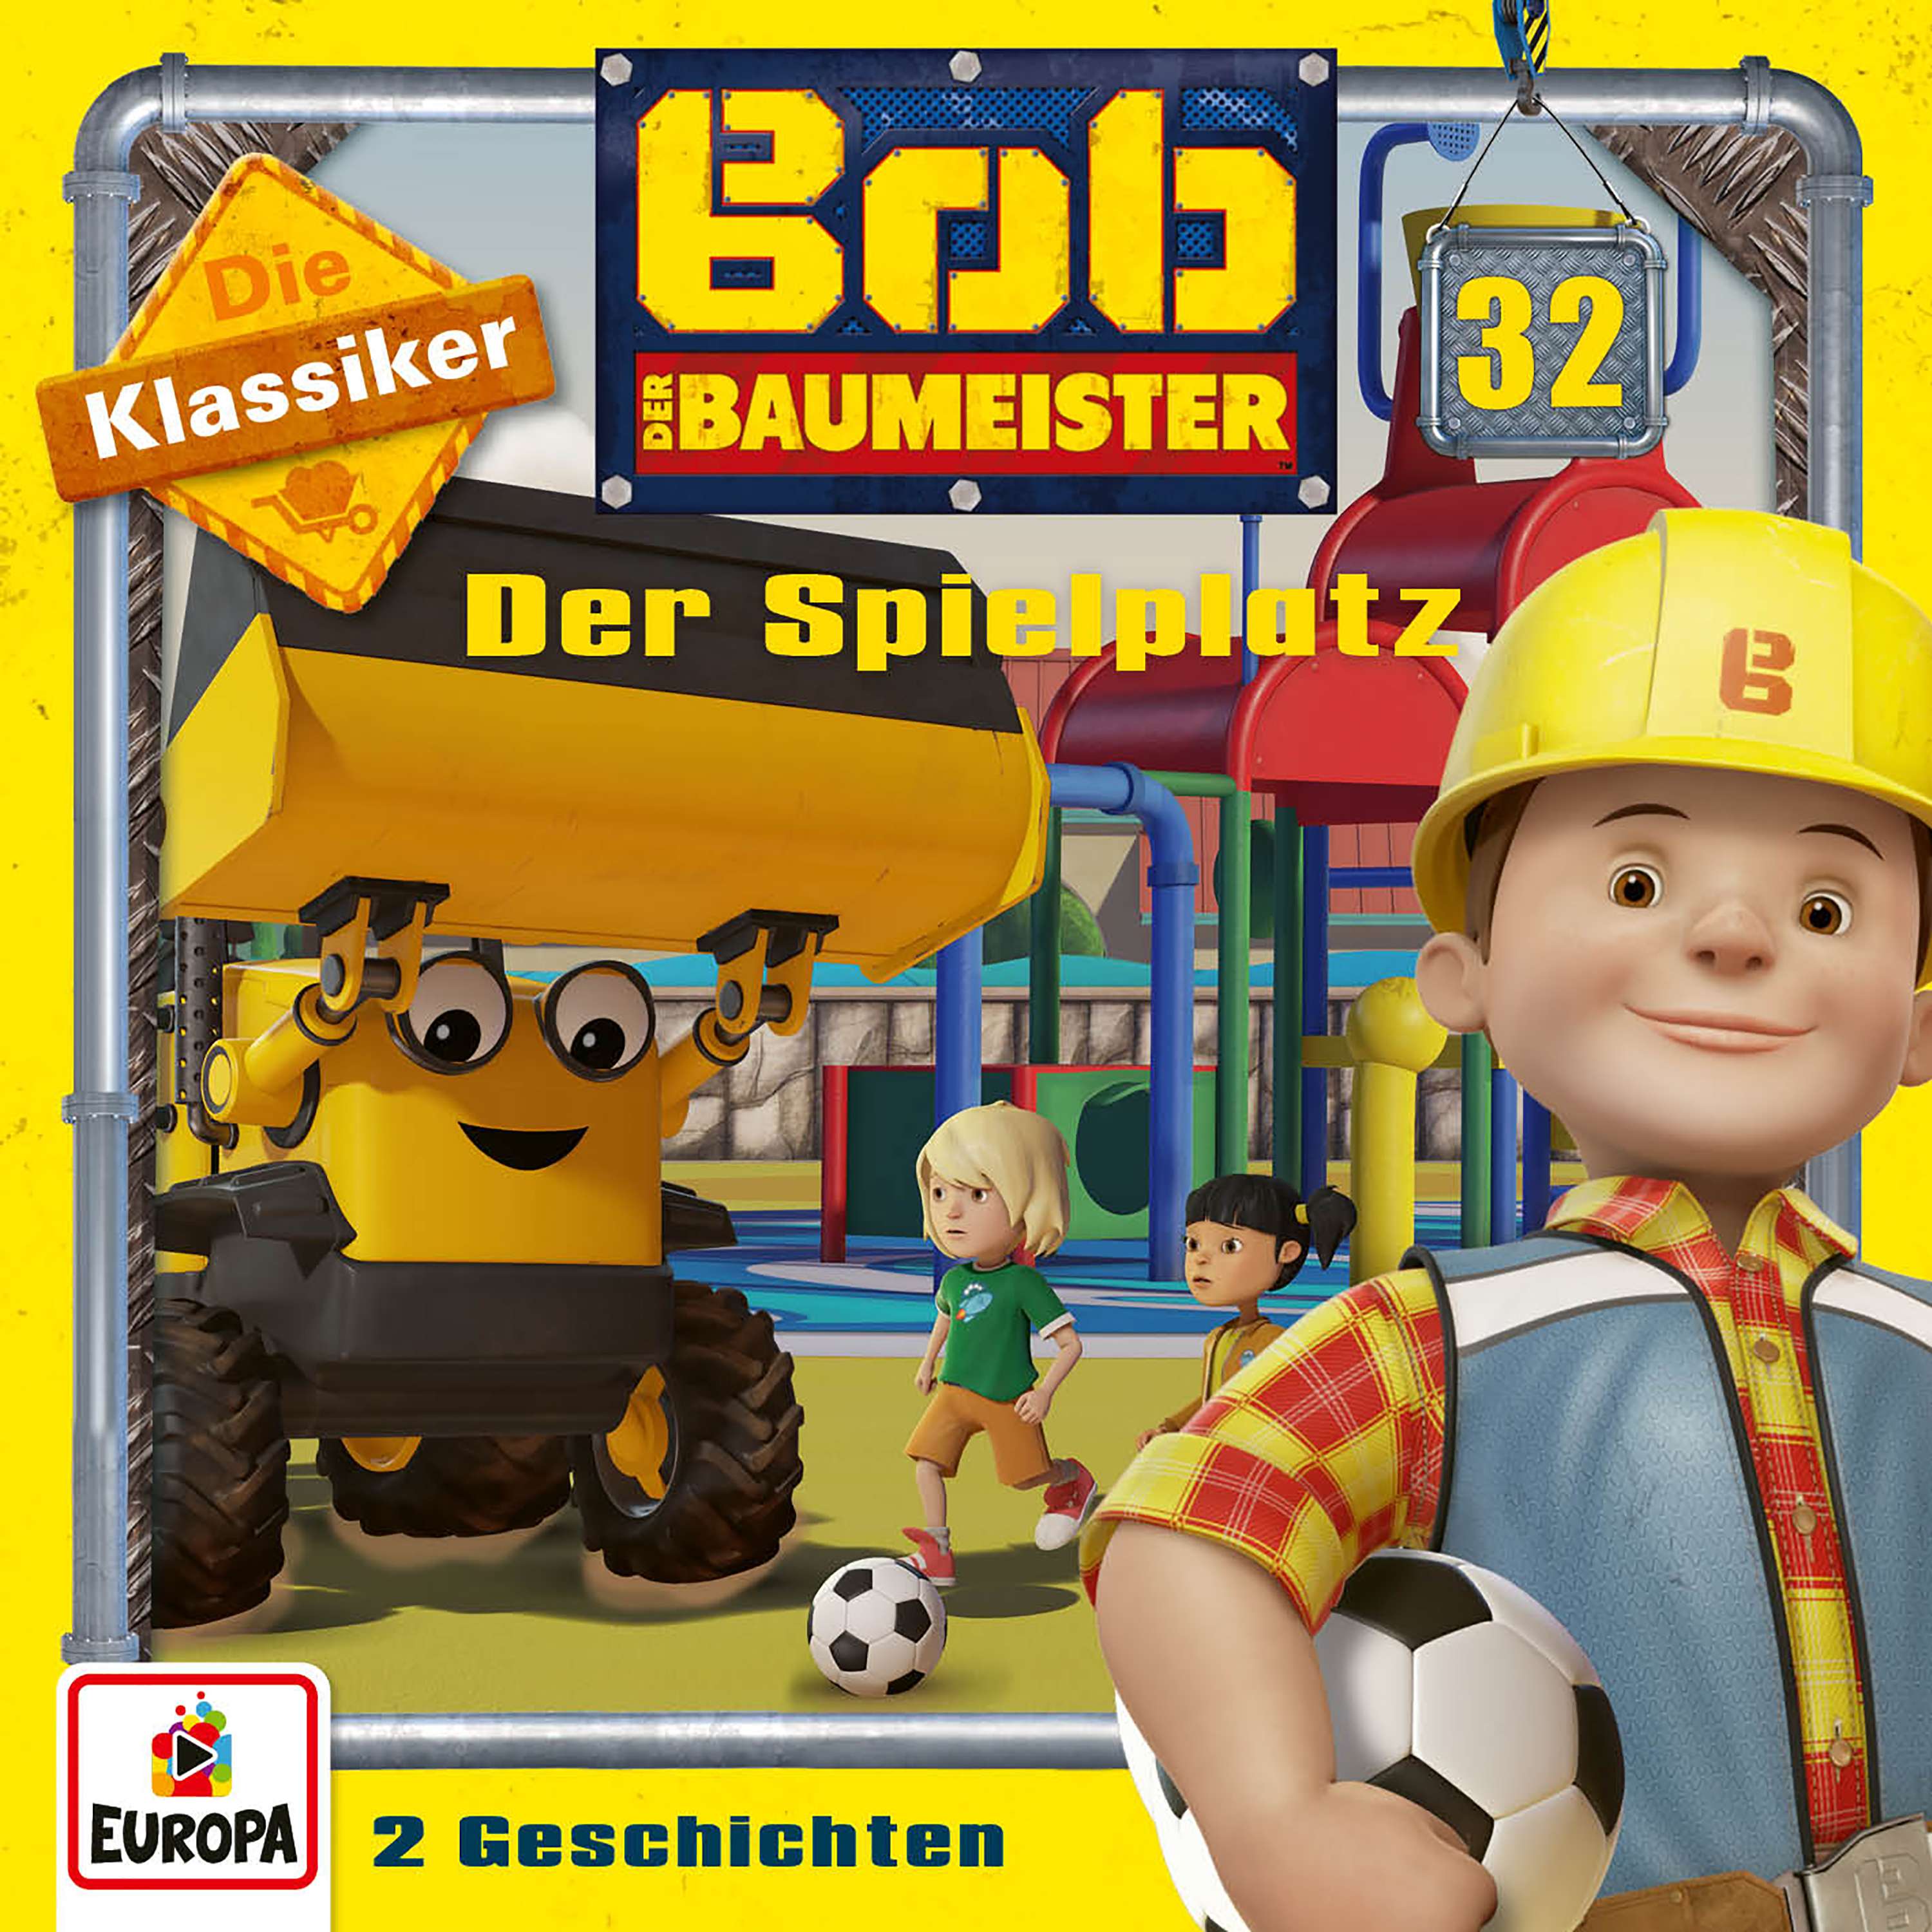 Bob der Baumeister: Der Spielplatz (Die Klassiker)